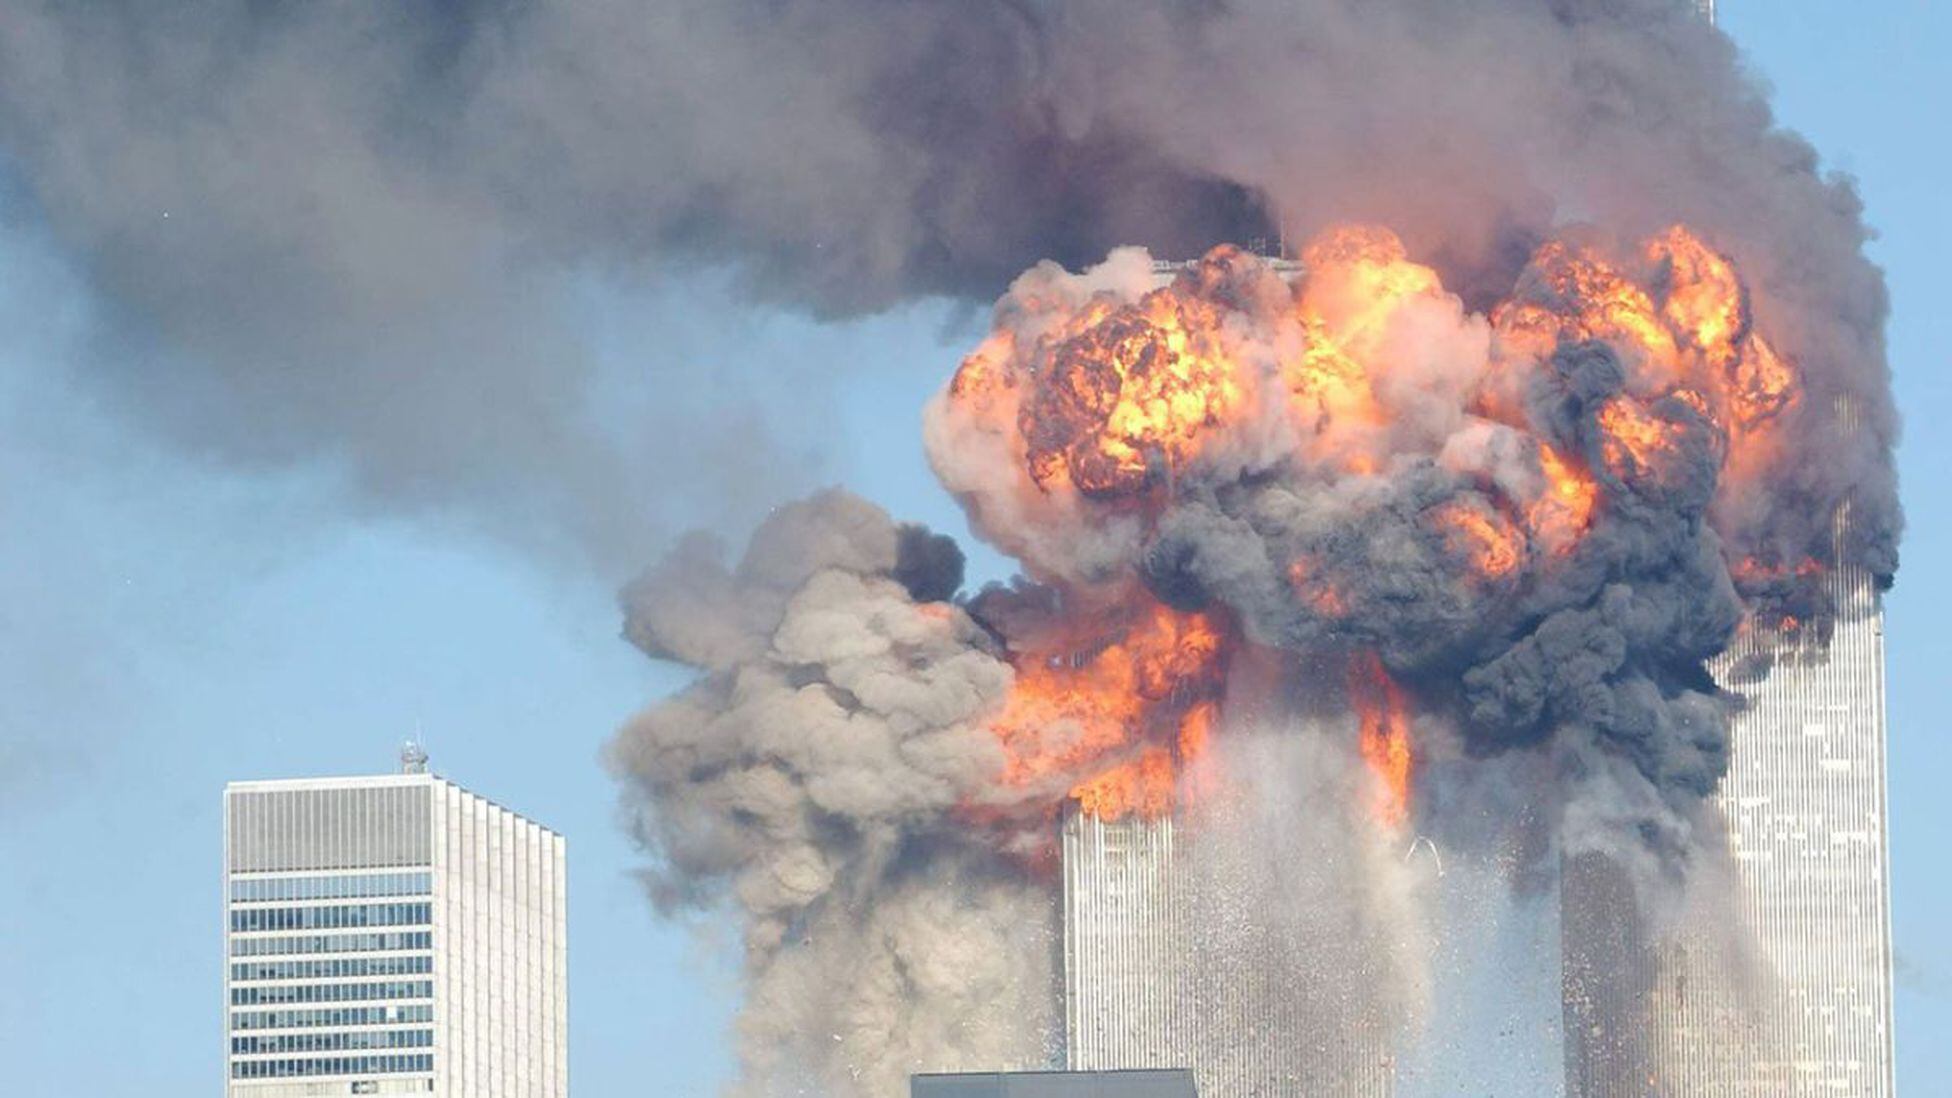 Vigilante Con fecha de regimiento Cronología del 9/11: ¿A qué hora fueron los ataques? - AS USA